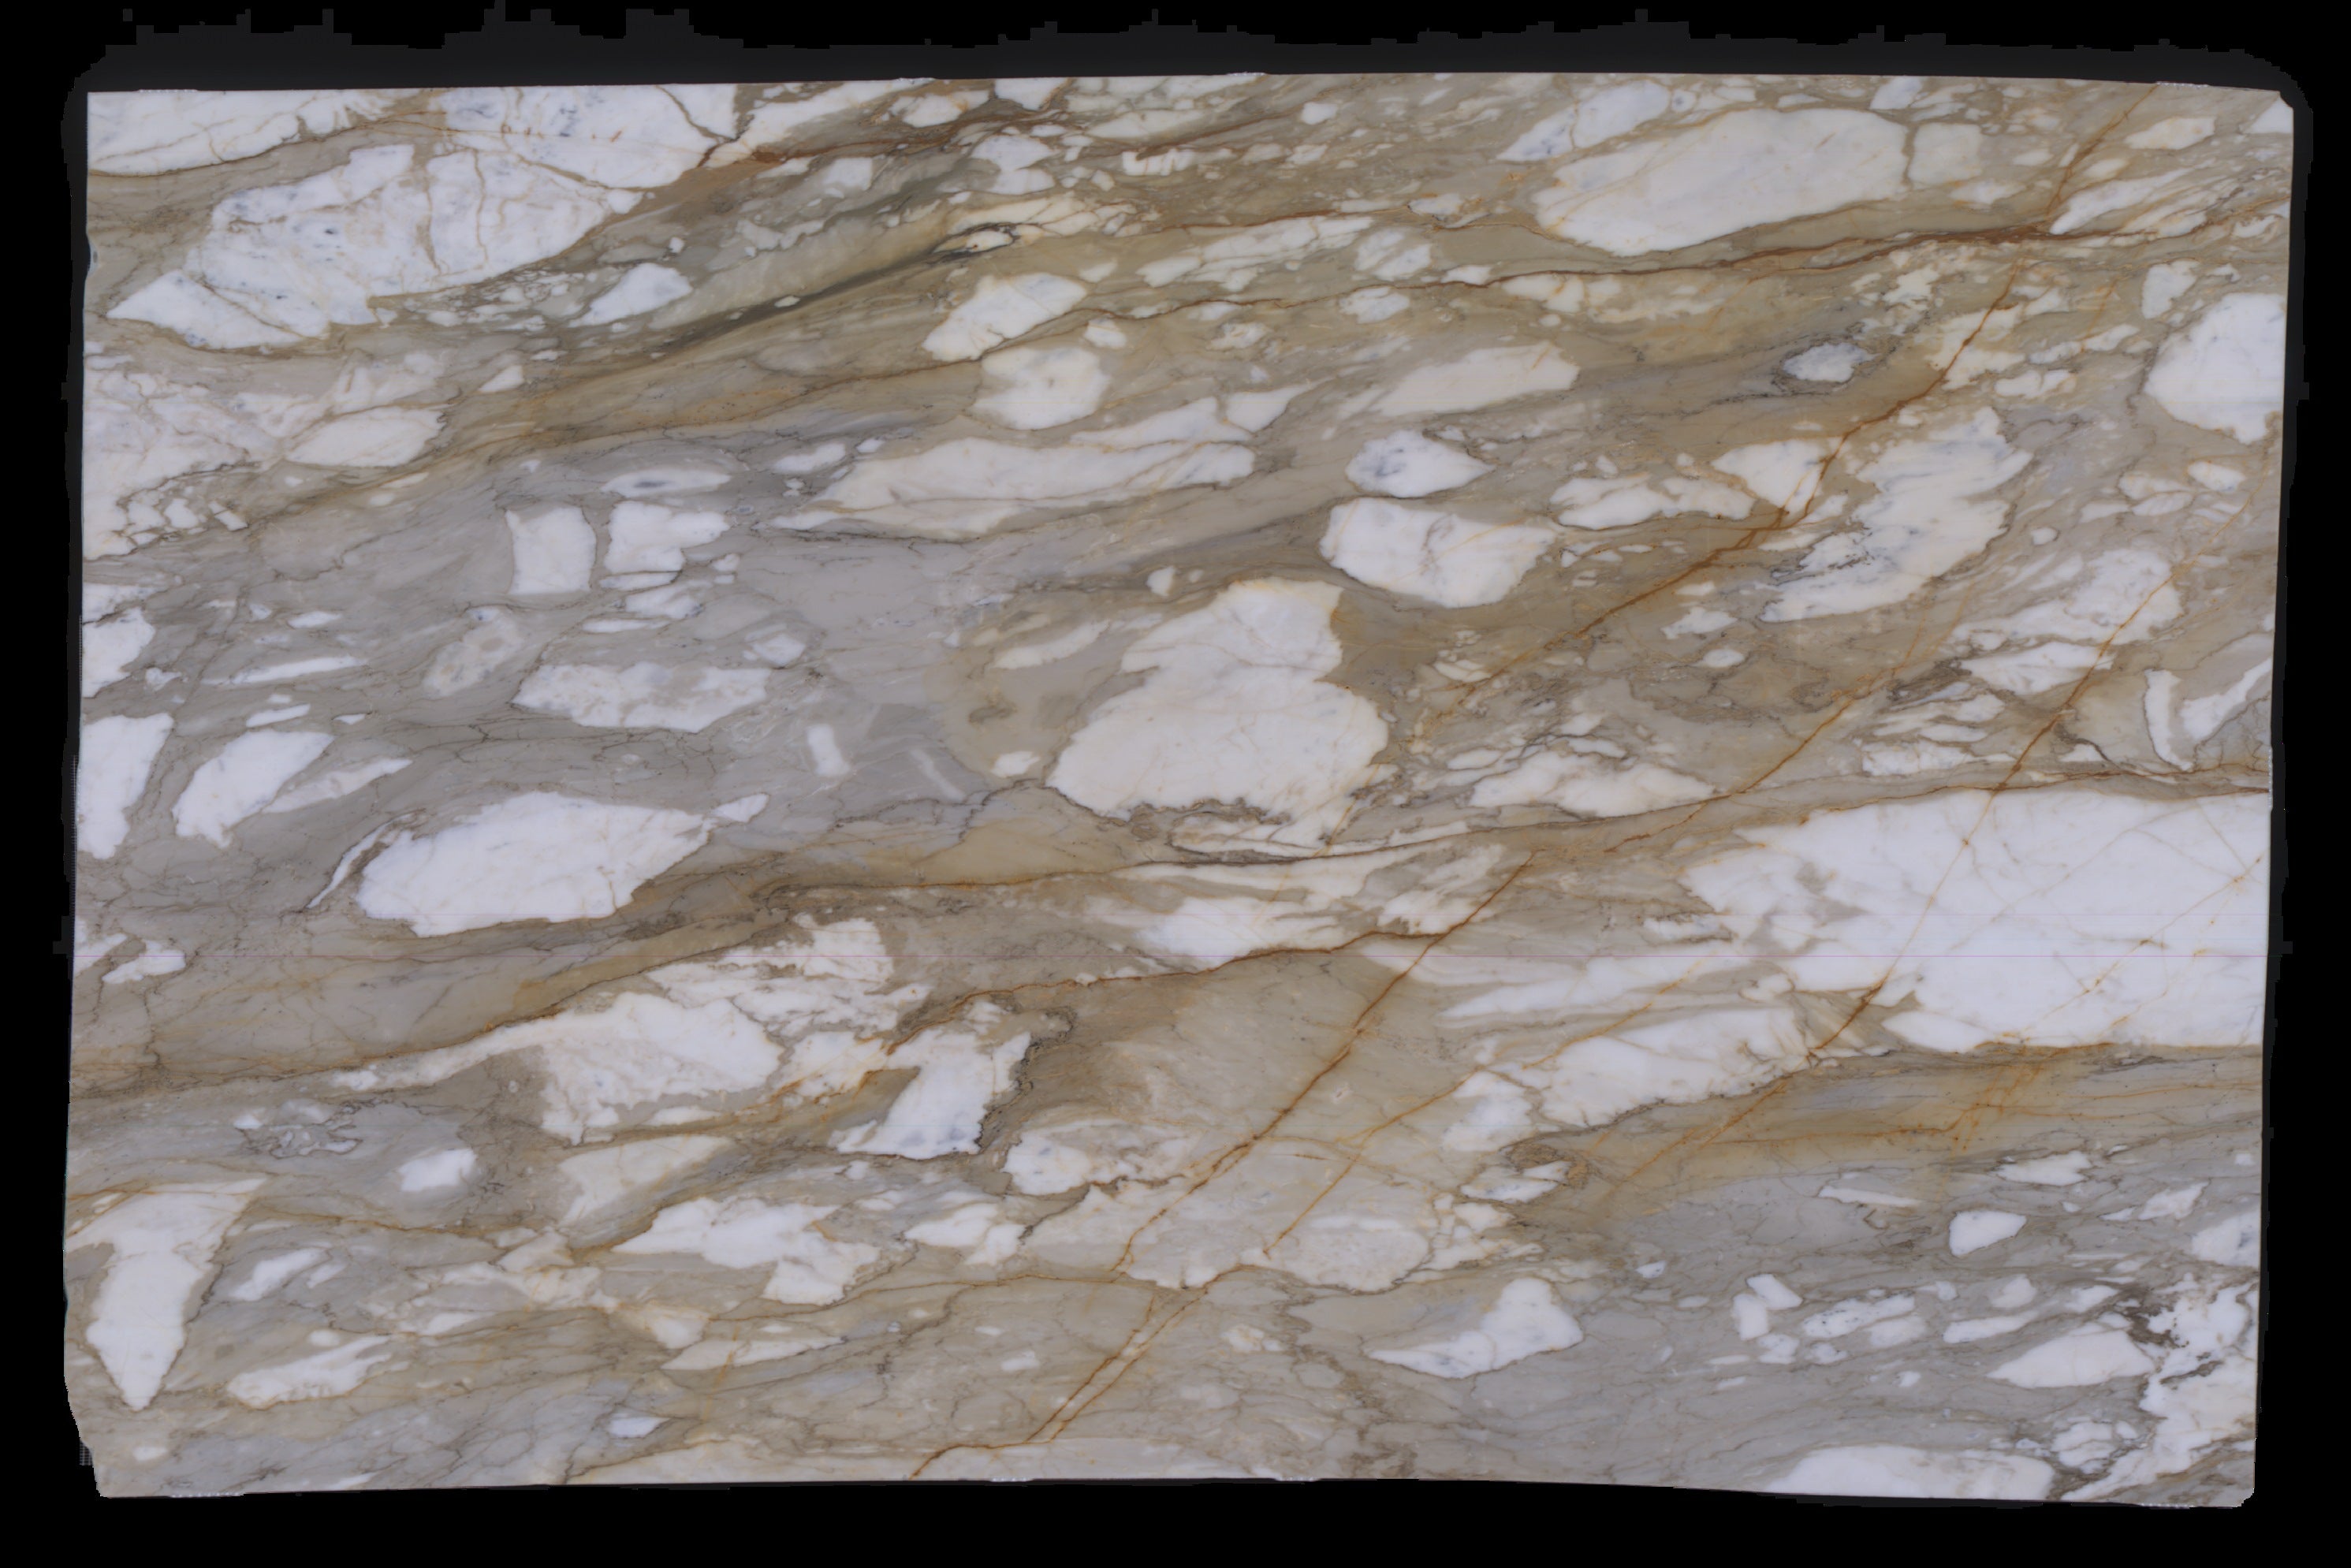  Calacatta Macchia Vecchia Marble Slab 3/4 - 953#48 -  VS 71x112 